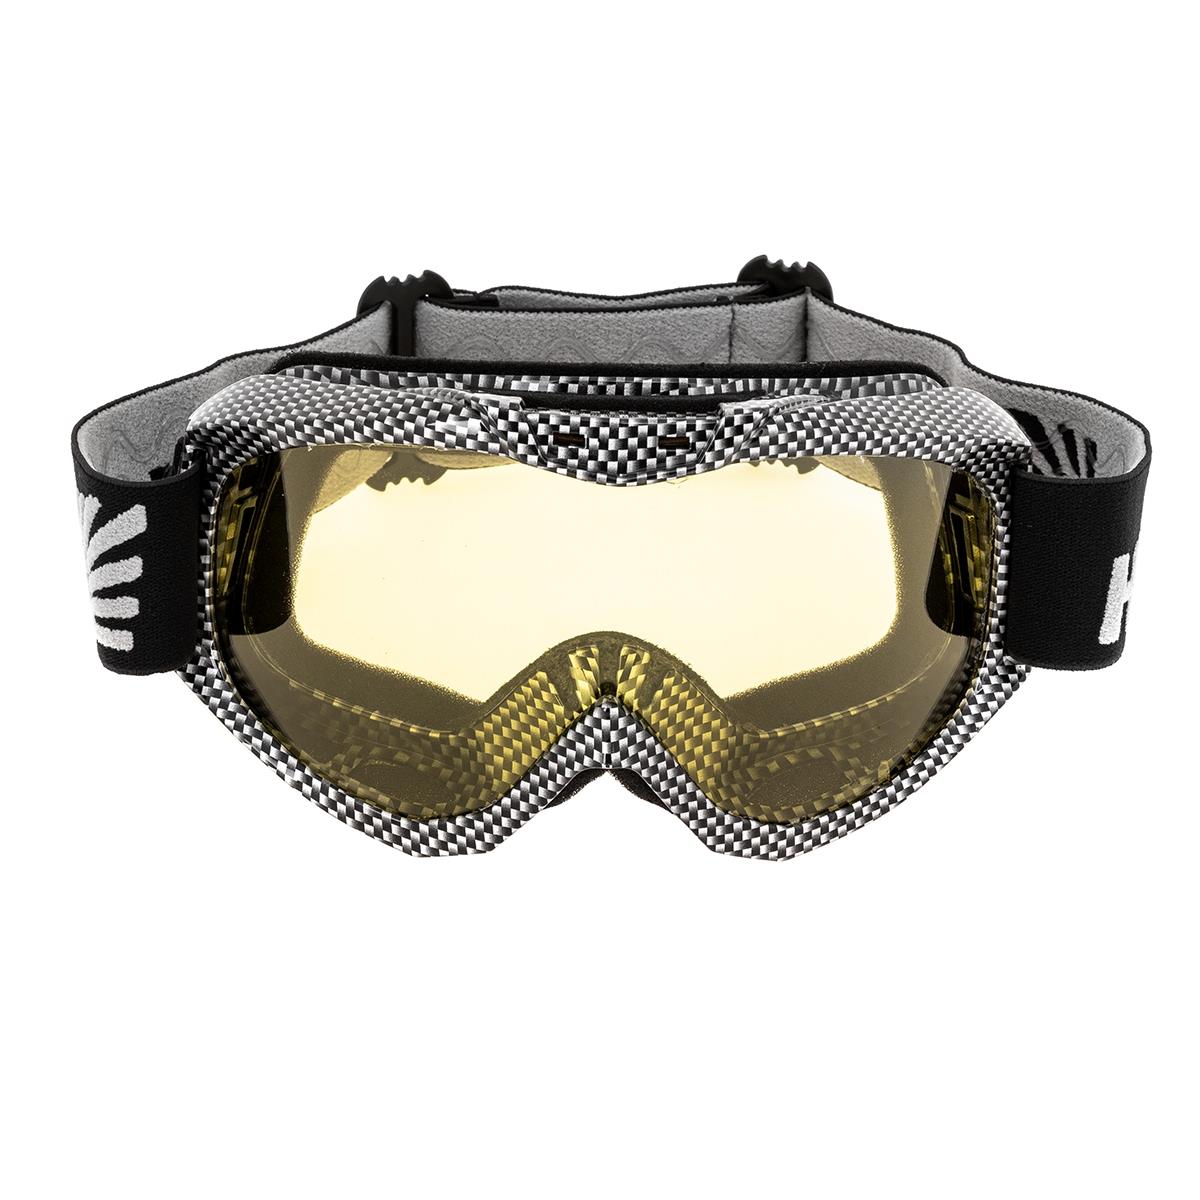 Очки горнолыжные HS-MT-001-Y Helios очки маска для езды на мототехнике разборные визор прозрачный